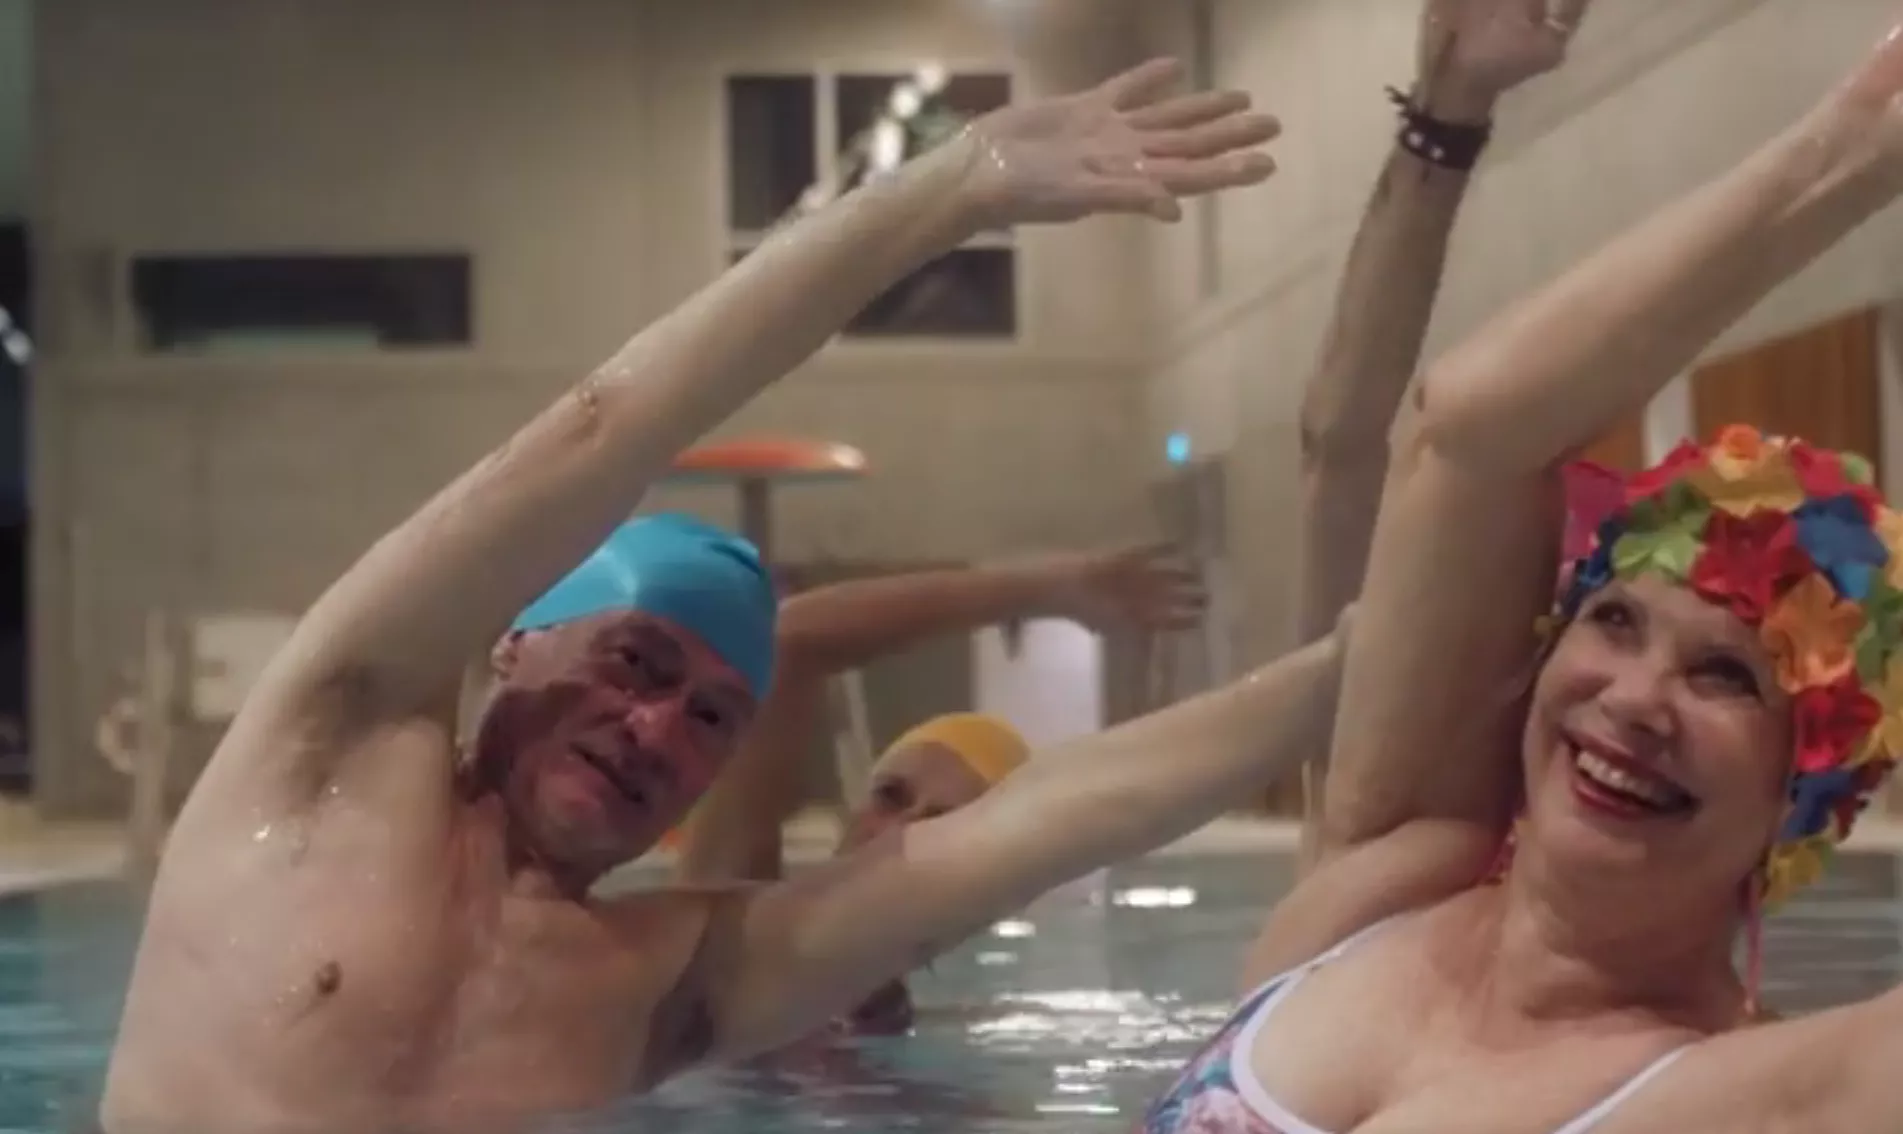 Pensionistsvømning er en fest i Katinkas nye video